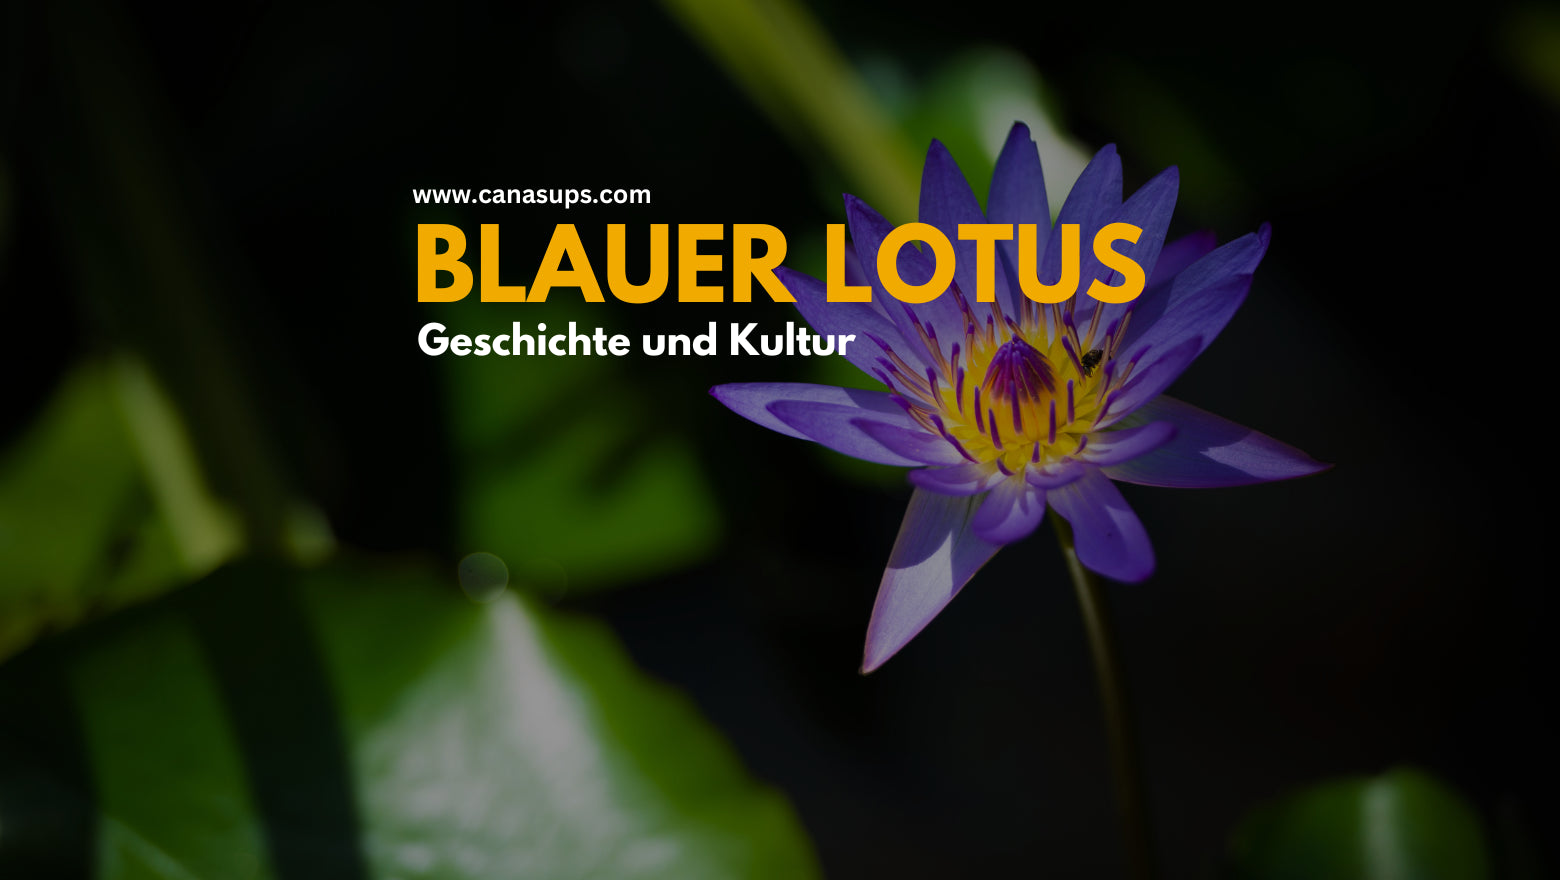 Blauer Lotus - Geschichte und Kultur